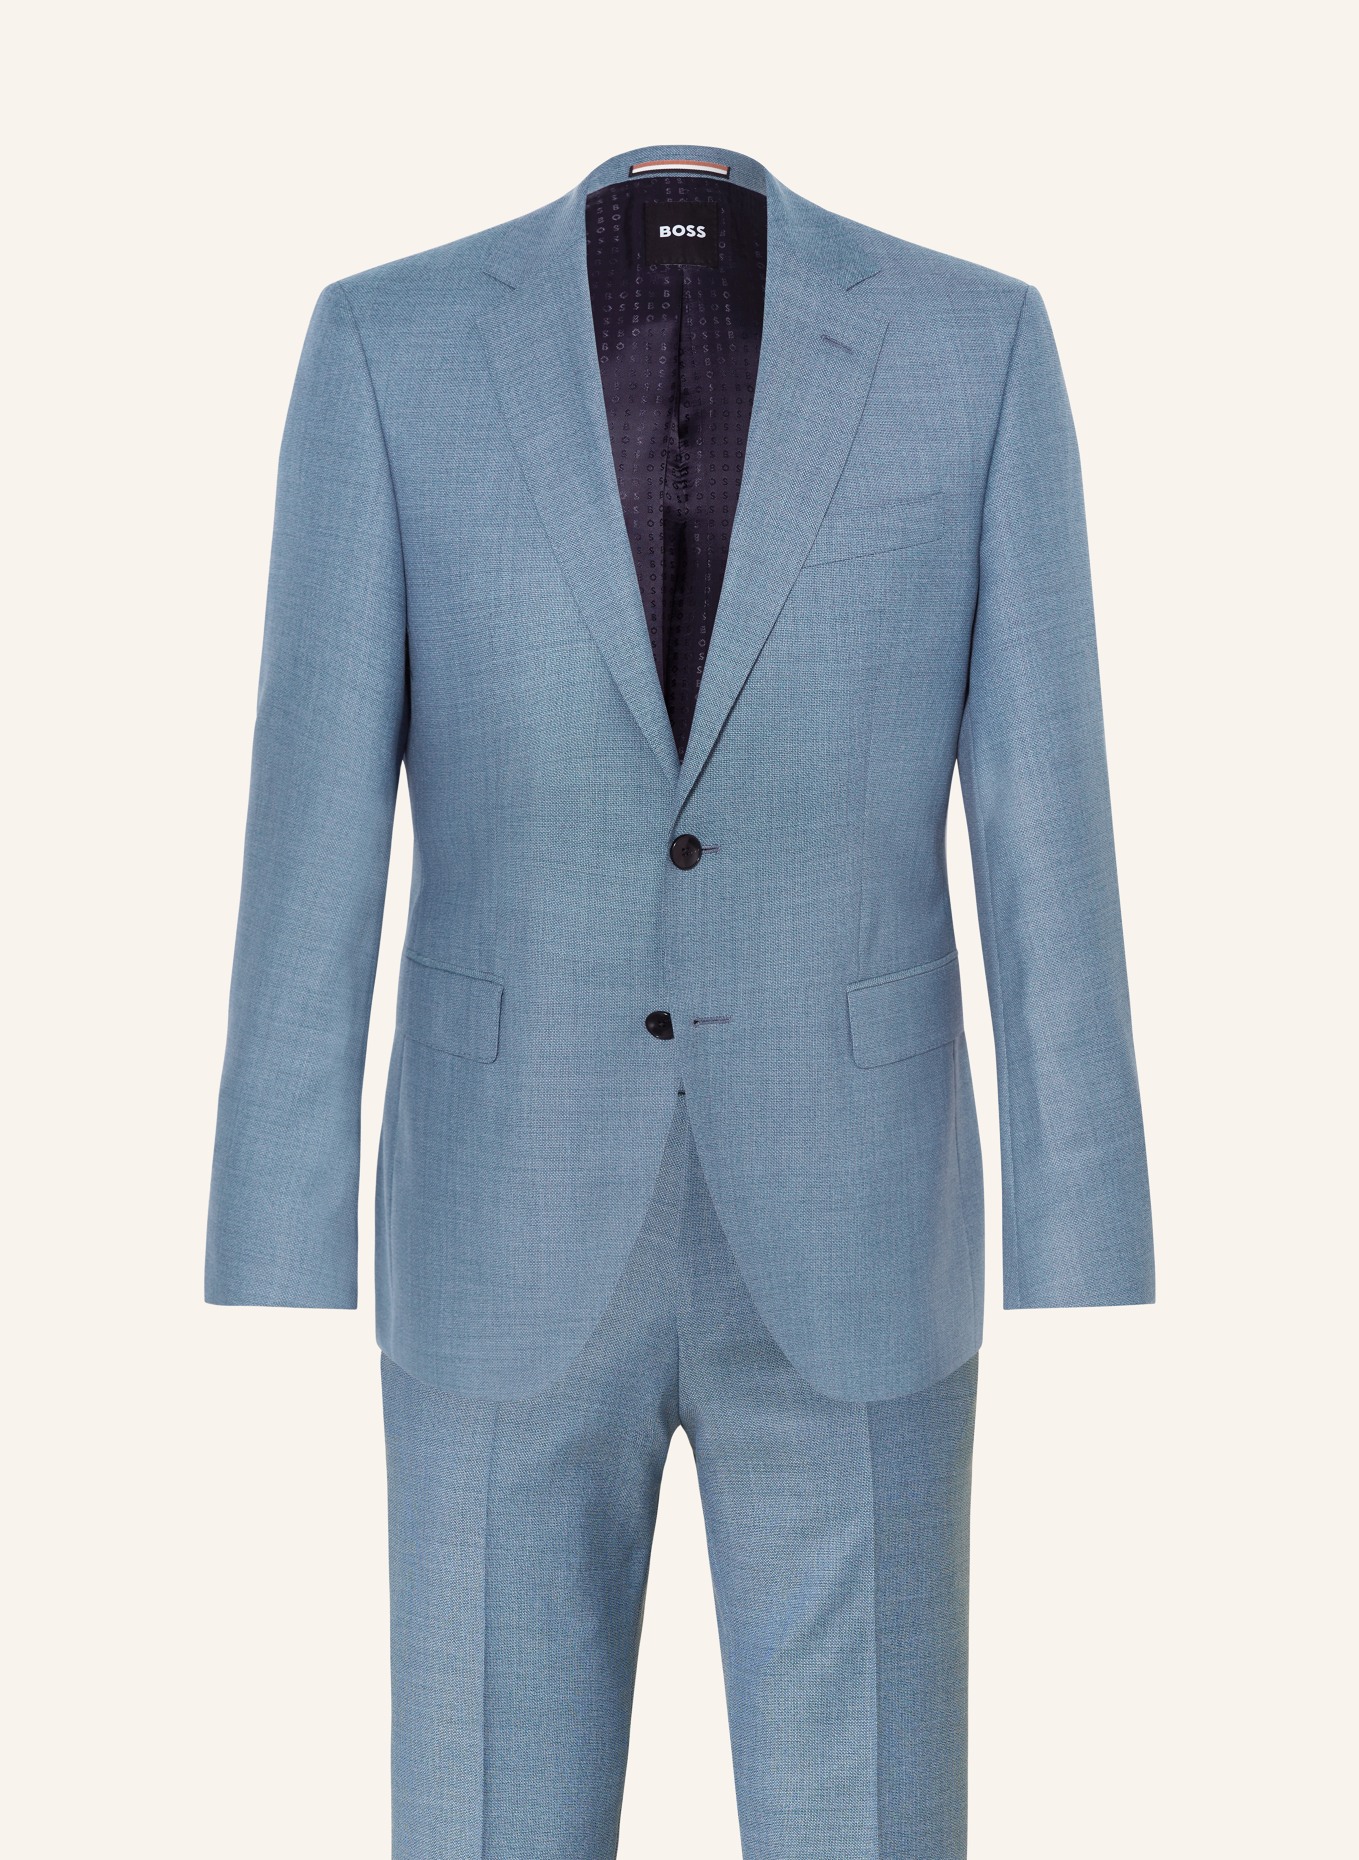 BOSS Anzug JECKSON Regular Fit, Farbe: 438 BRIGHT BLUE (Bild 1)